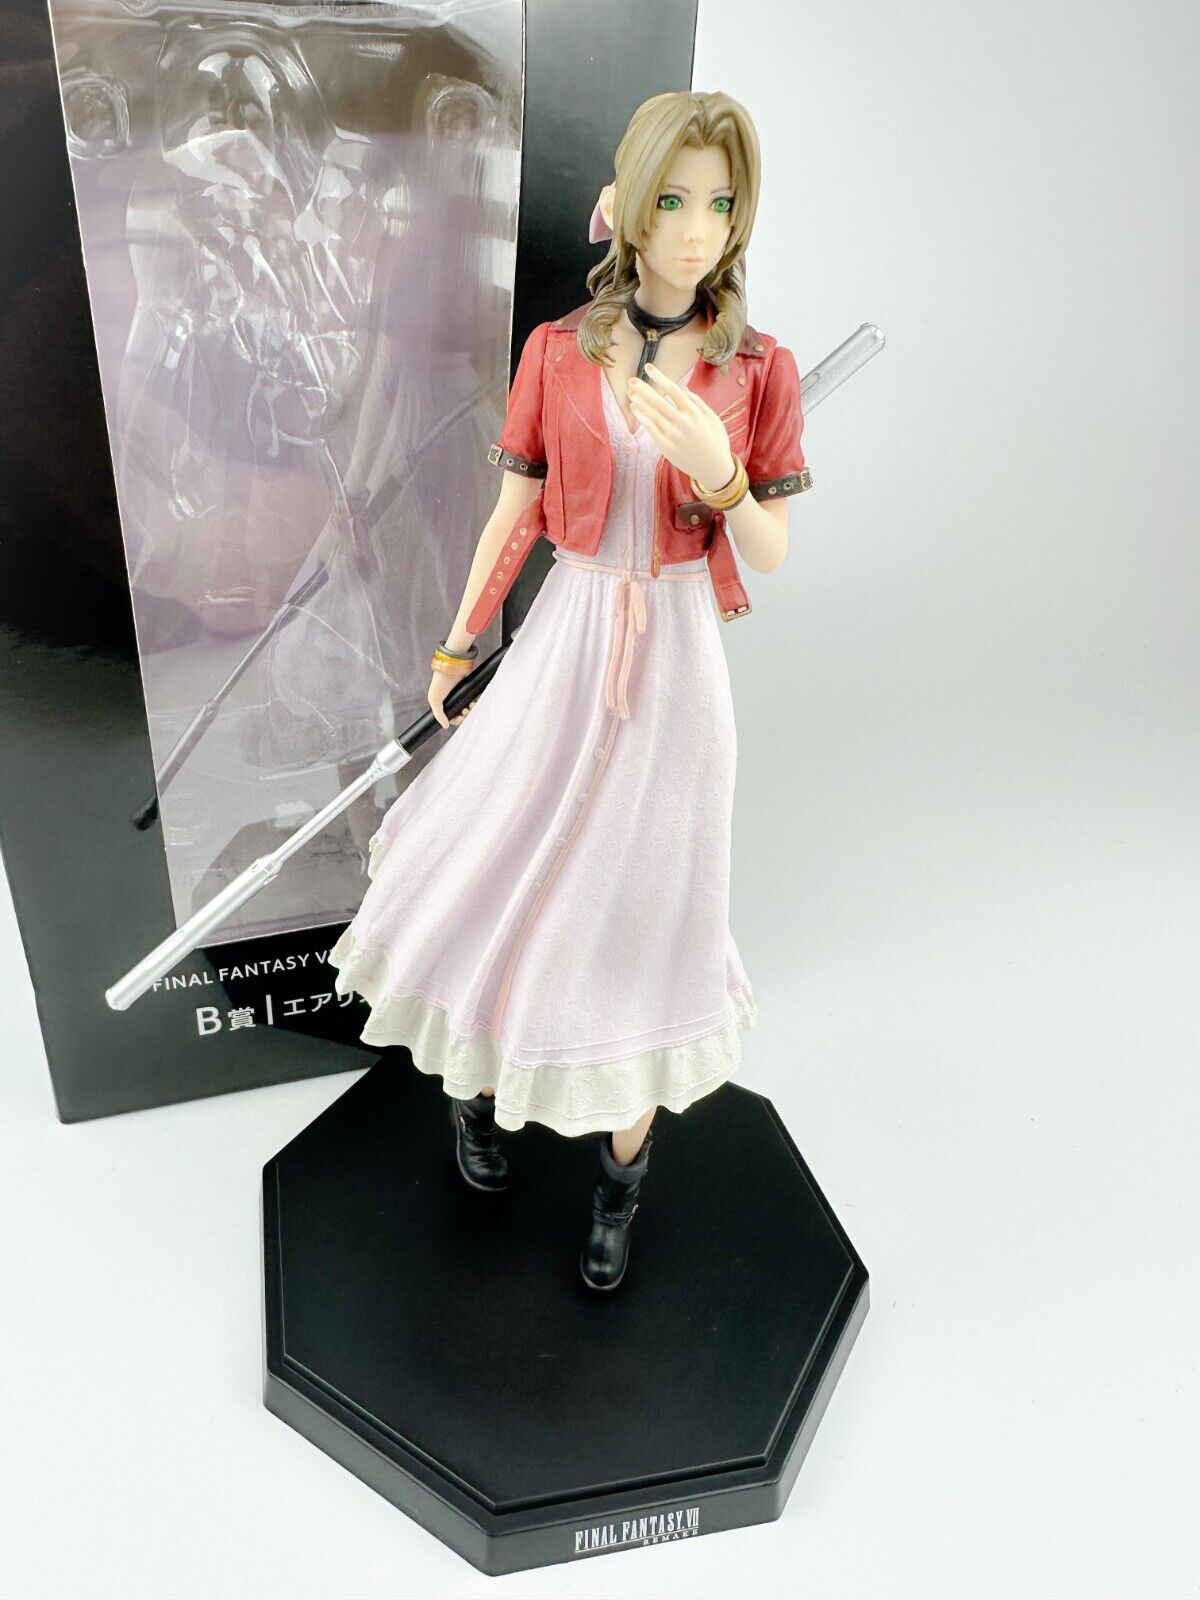 Final Fantasy 7 Remake Aerith Figure Release Celebration Kuji B SQUARE ENIX FF7R